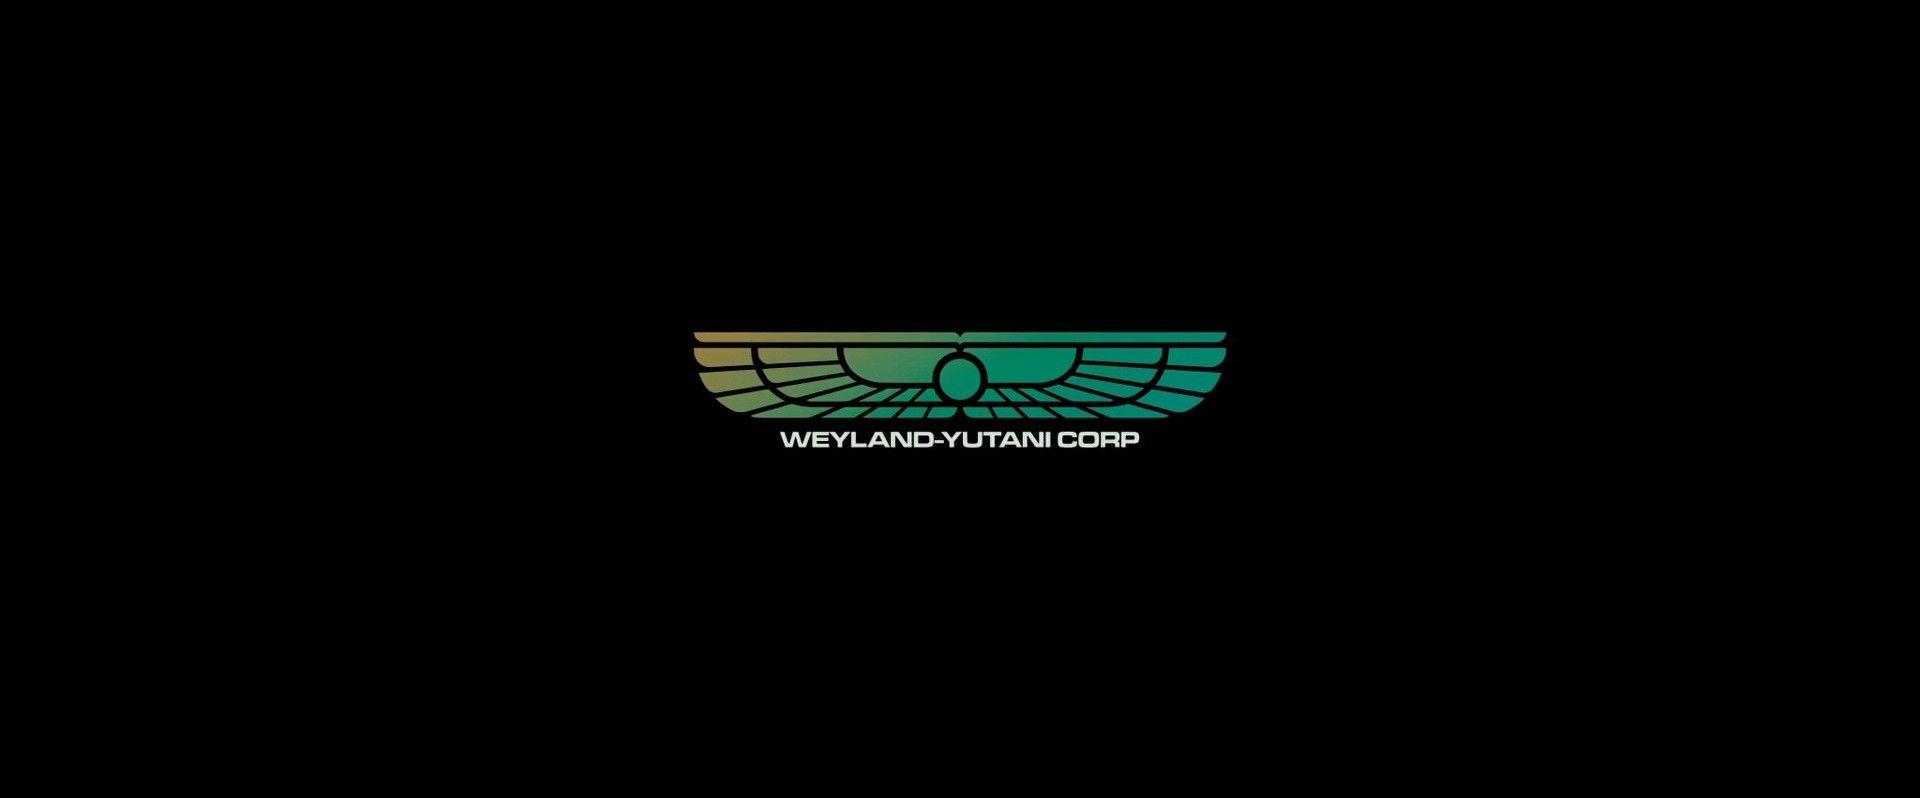 Alien 1979 Logo - Weyland Yutani Corporation In “Alien” Franchise (1979–2017)